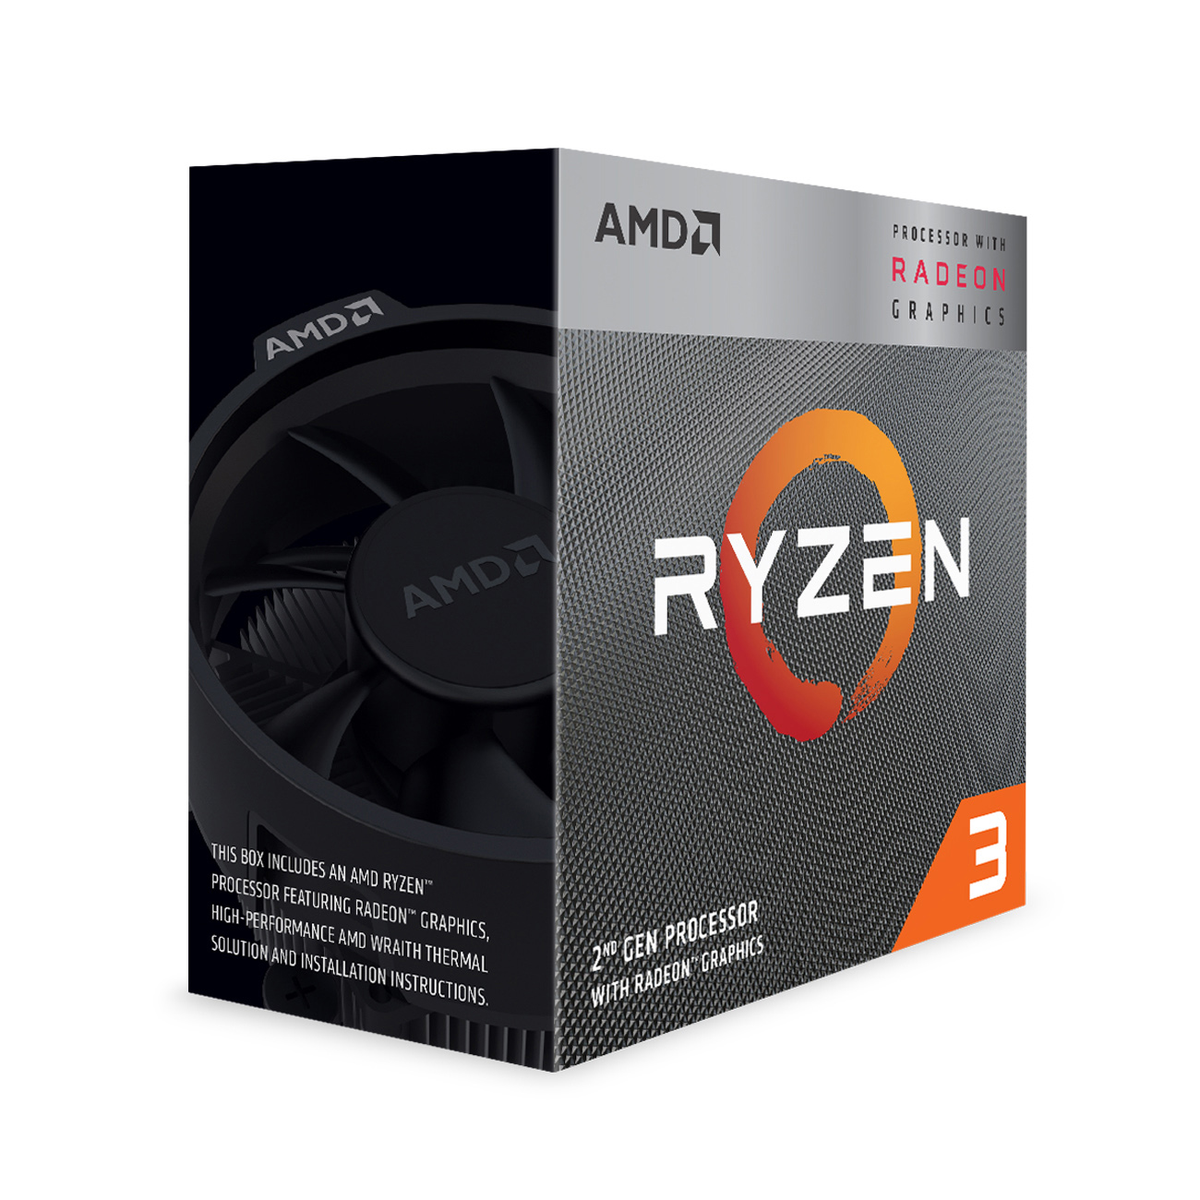 AMD 3200G Prozessor mit Mehrfarbig Boxed-Kühler